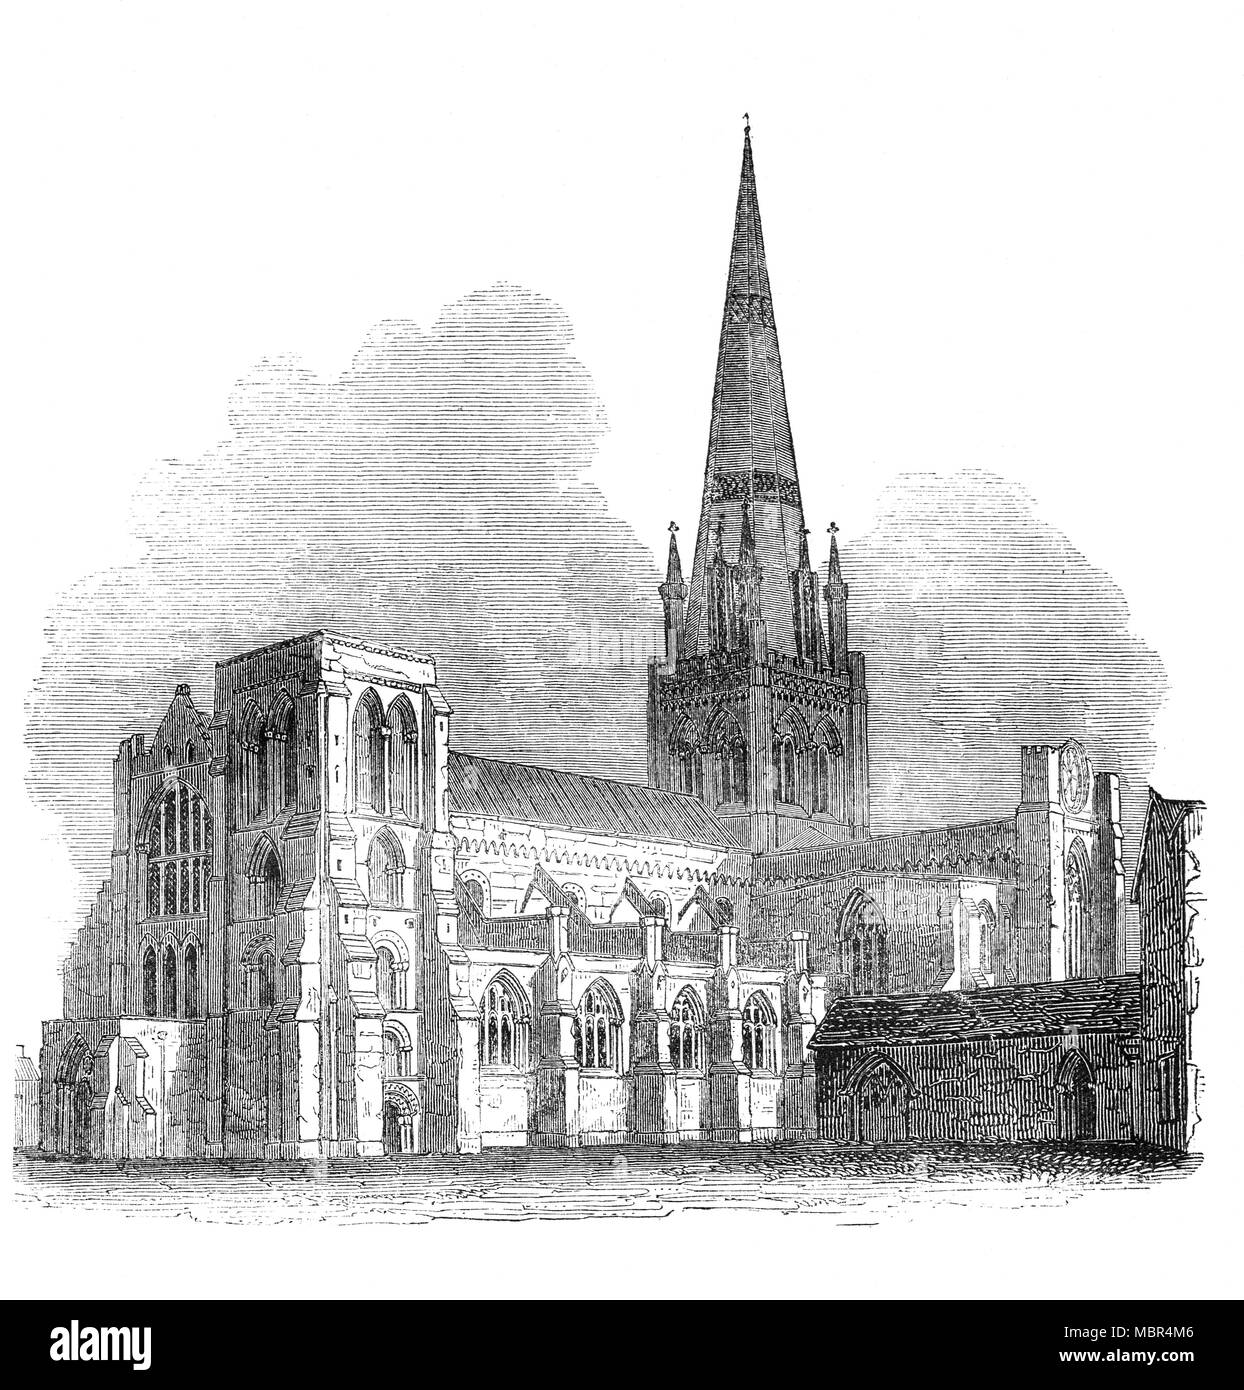 La Cathédrale de Chichester, connu officiellement sous le nom de l'église cathédrale de la Sainte Trinité, est situé dans la région de Chichester, dans le Sussex, Royaume-Uni. Elle a été fondée comme une cathédrale en 1075 et consacrée en 1108 avec belle architecture tant dans le Norman et le gothique. Il a été appelé 'le plus typique de la cathédrale anglaise" par l'historien de l'architecture Nikolaus Pevsner. Banque D'Images